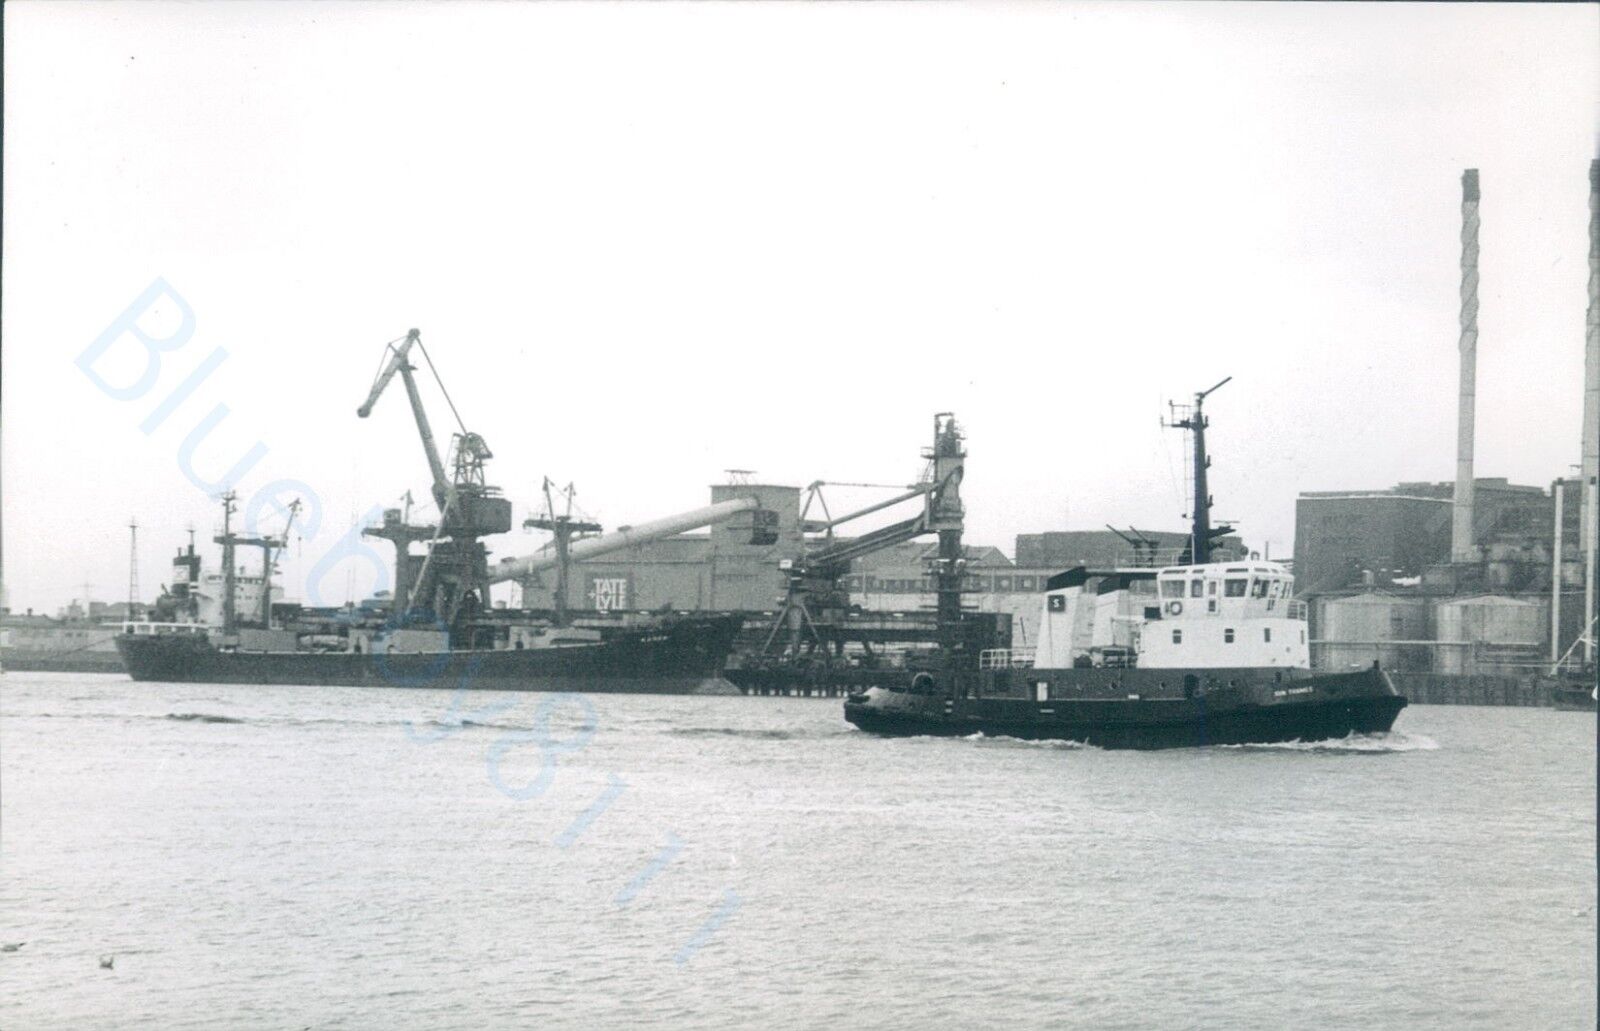 Cyprus Mv Karen D & british tug Sun thames 1995 ship photo